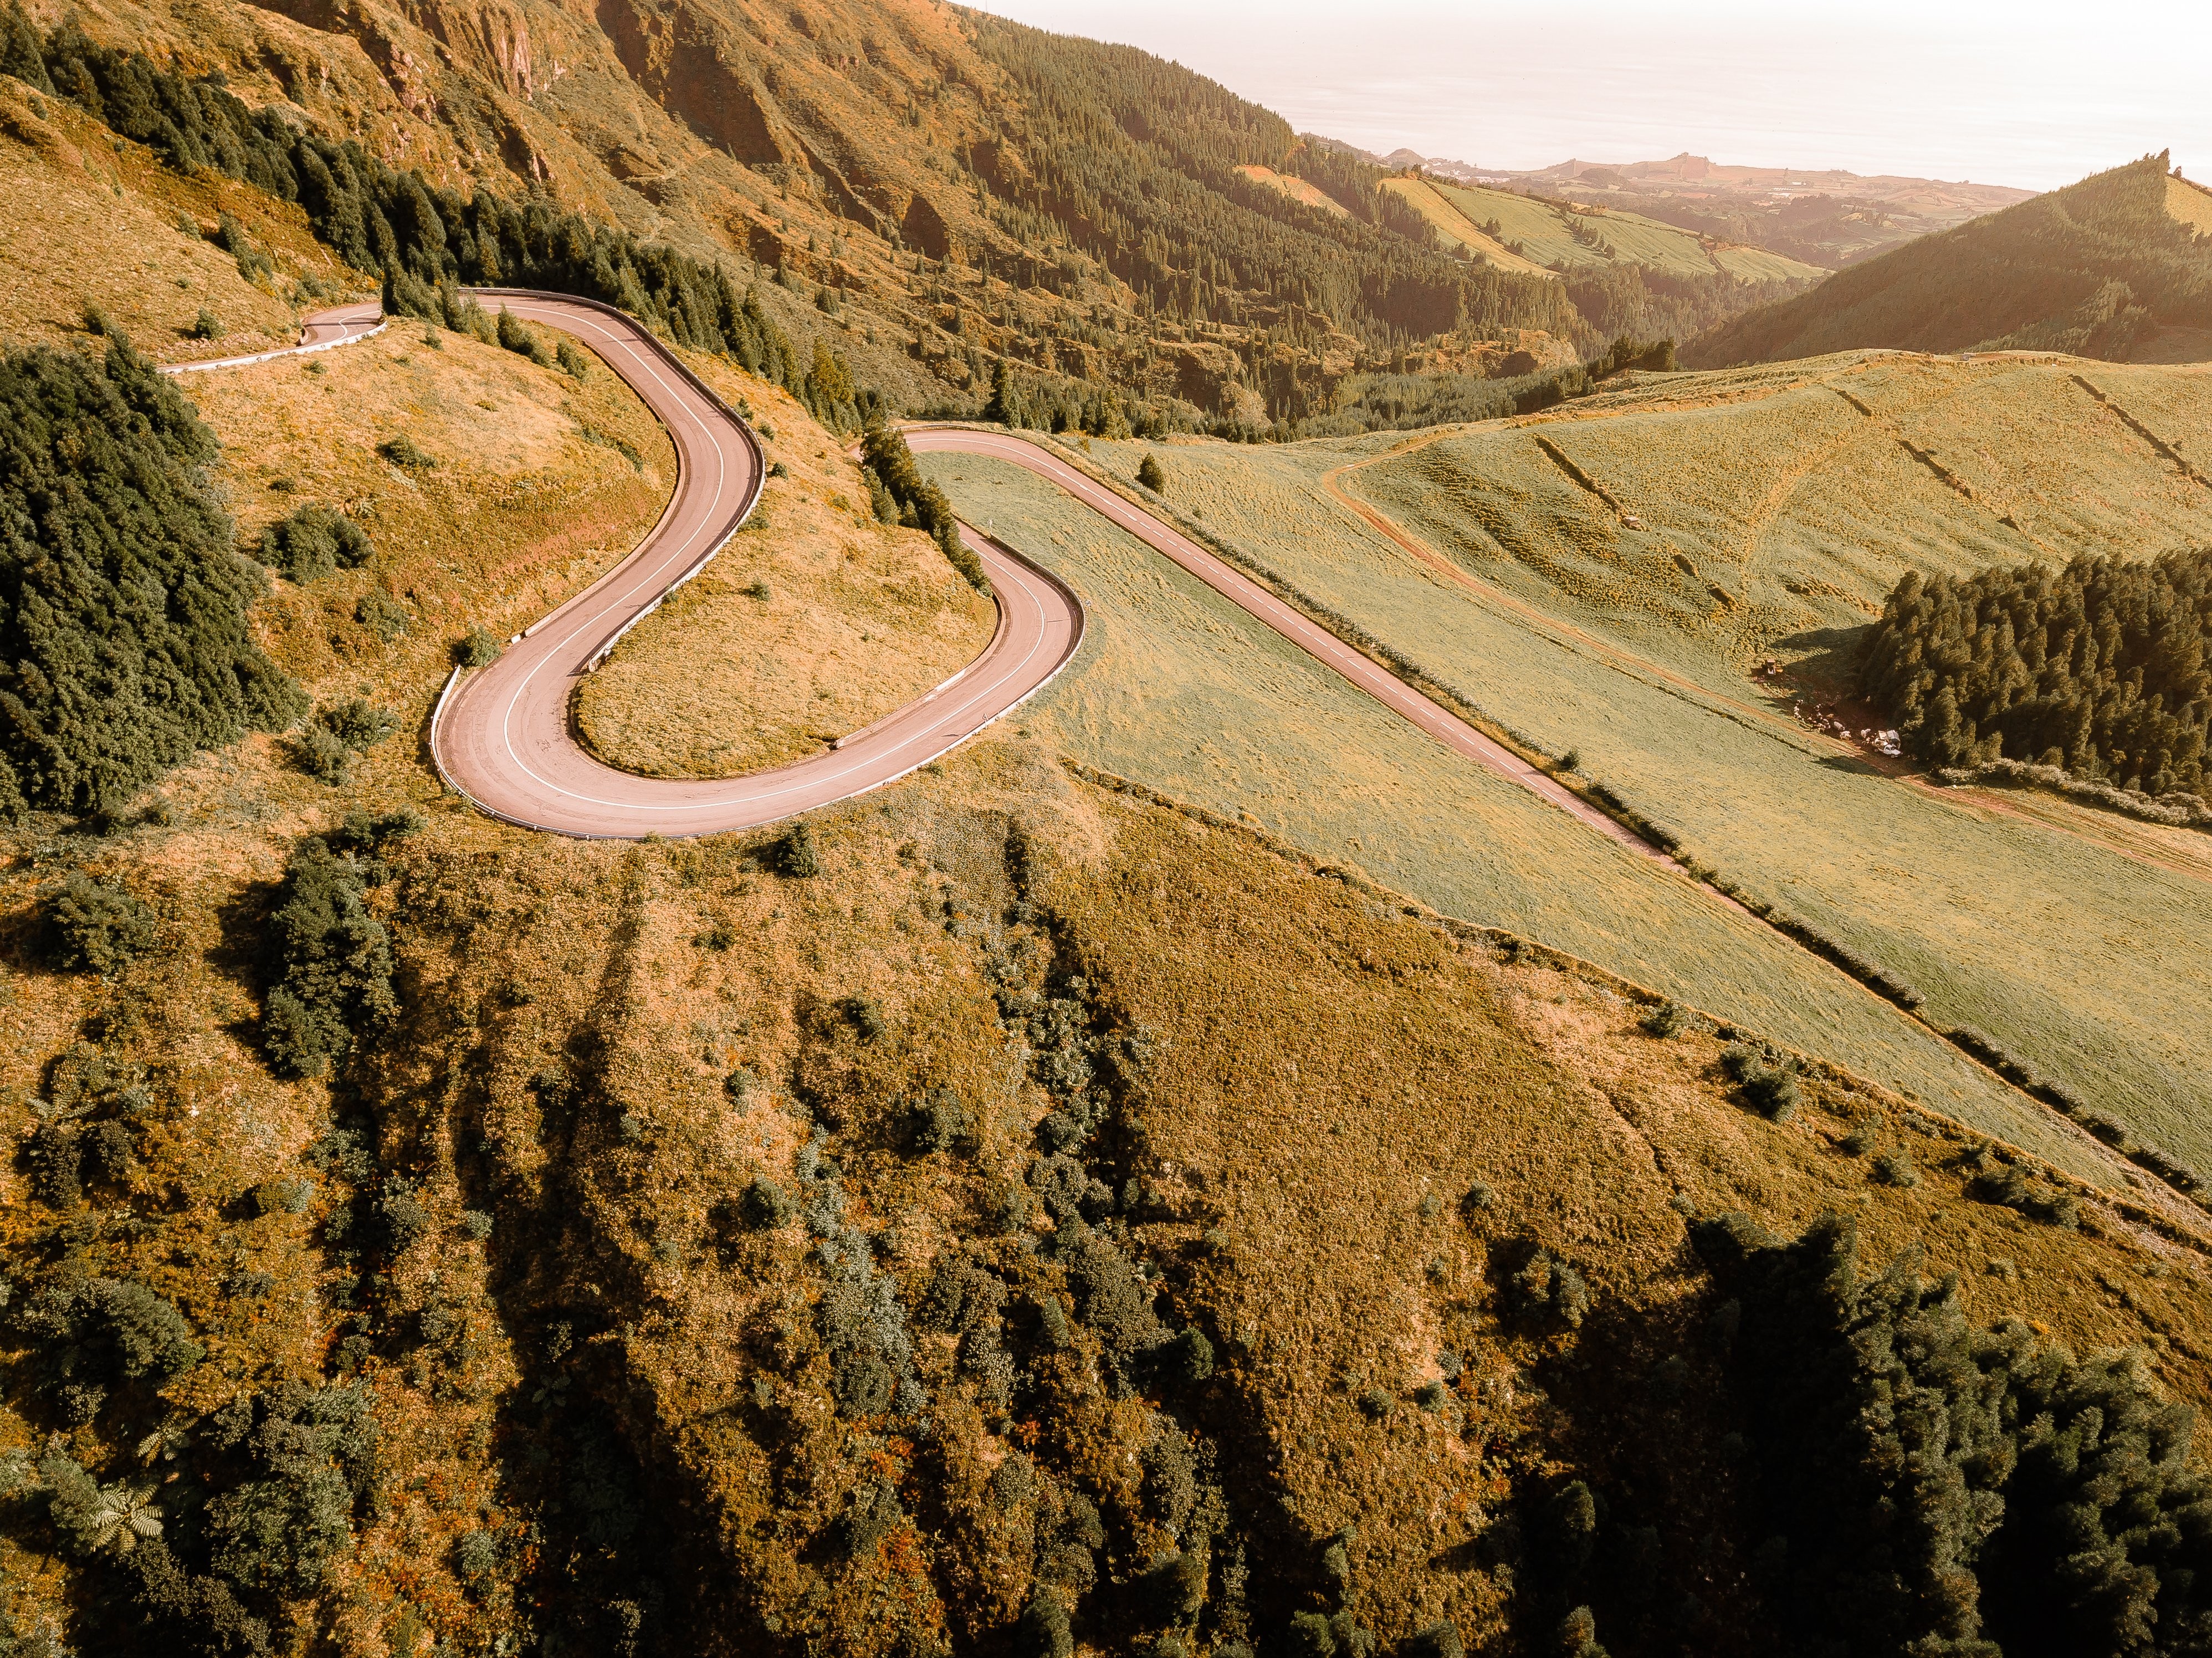 Carretera sinuosa a través de colinas cubiertas de hierba y árboles Foto